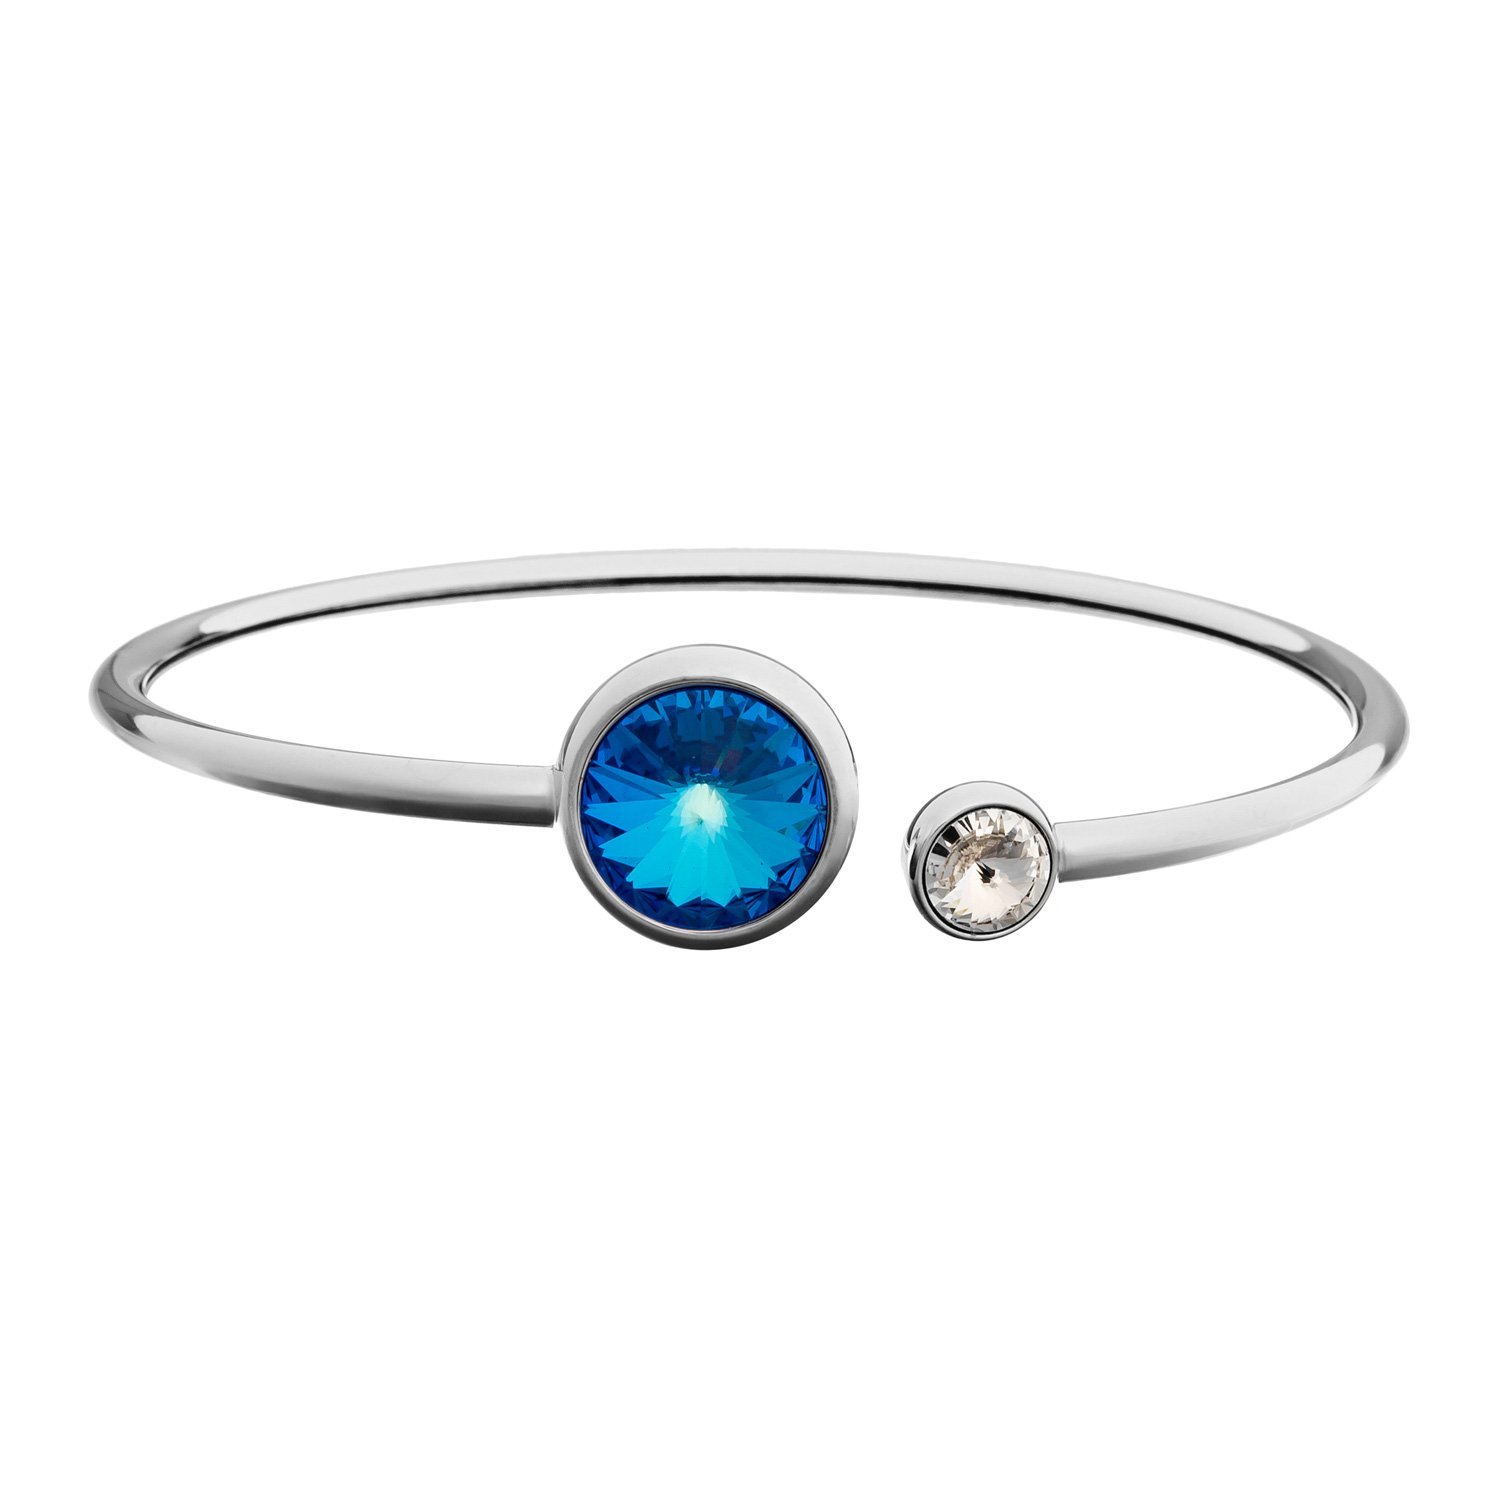  Royal Blue Delite<br>Brand: Fiore Luna, 